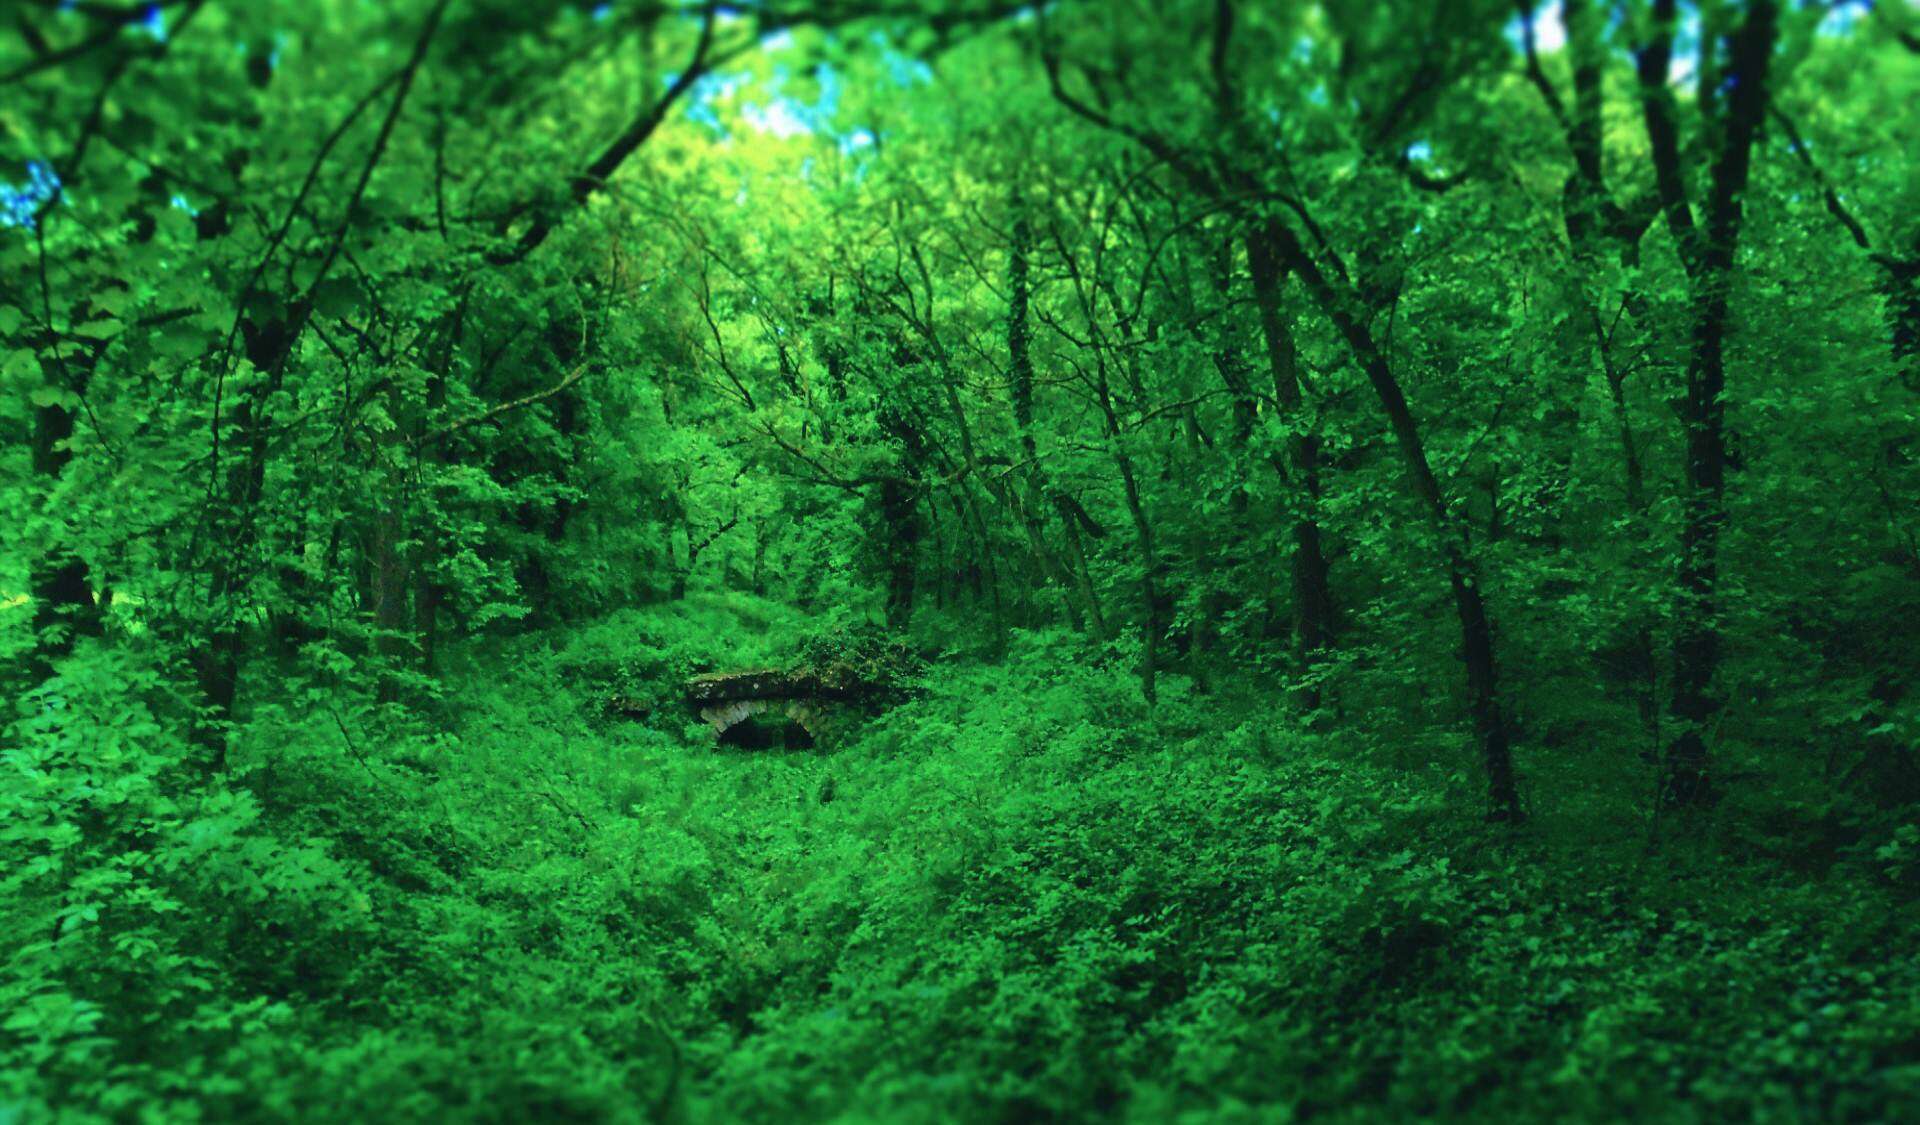 三张绿色森林PPT背景图片